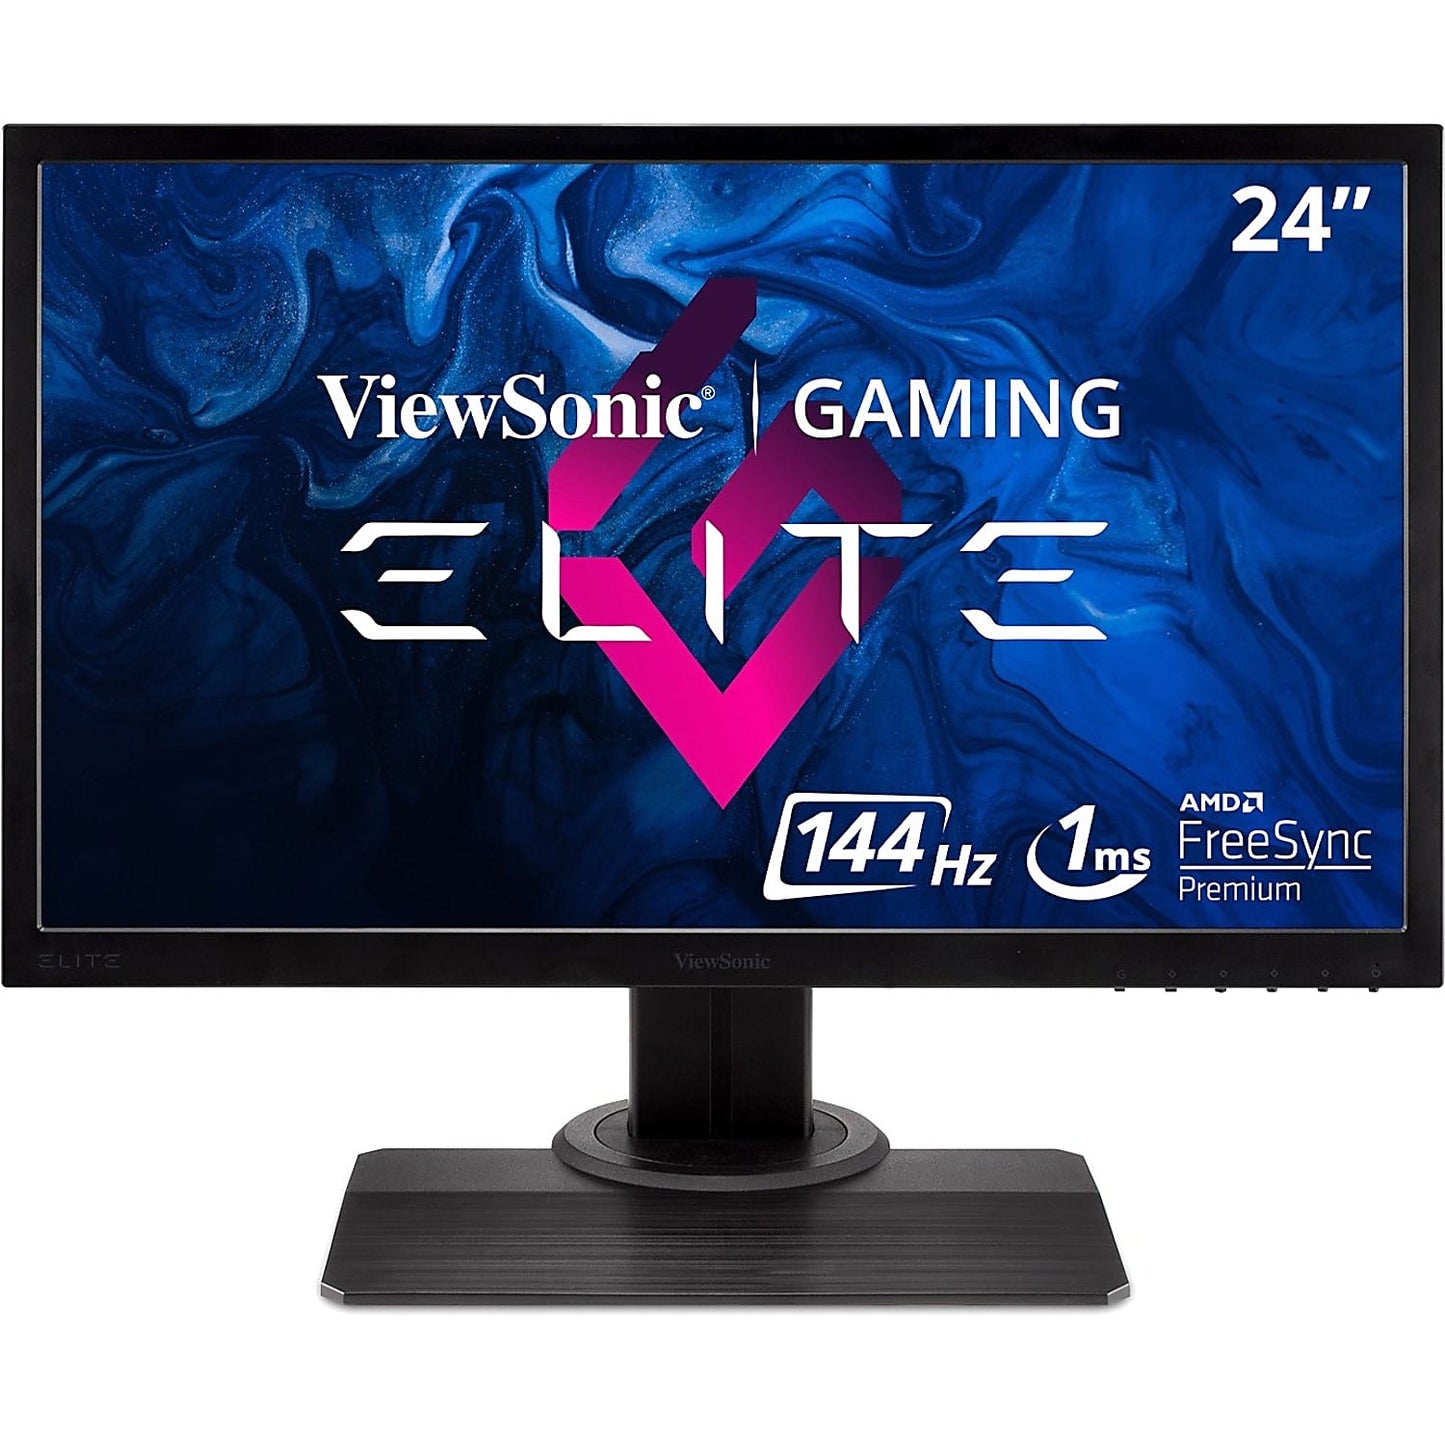 ViewSonic Elite 24" FHD RGB FreeSync Gaming Monitor - XG240R New